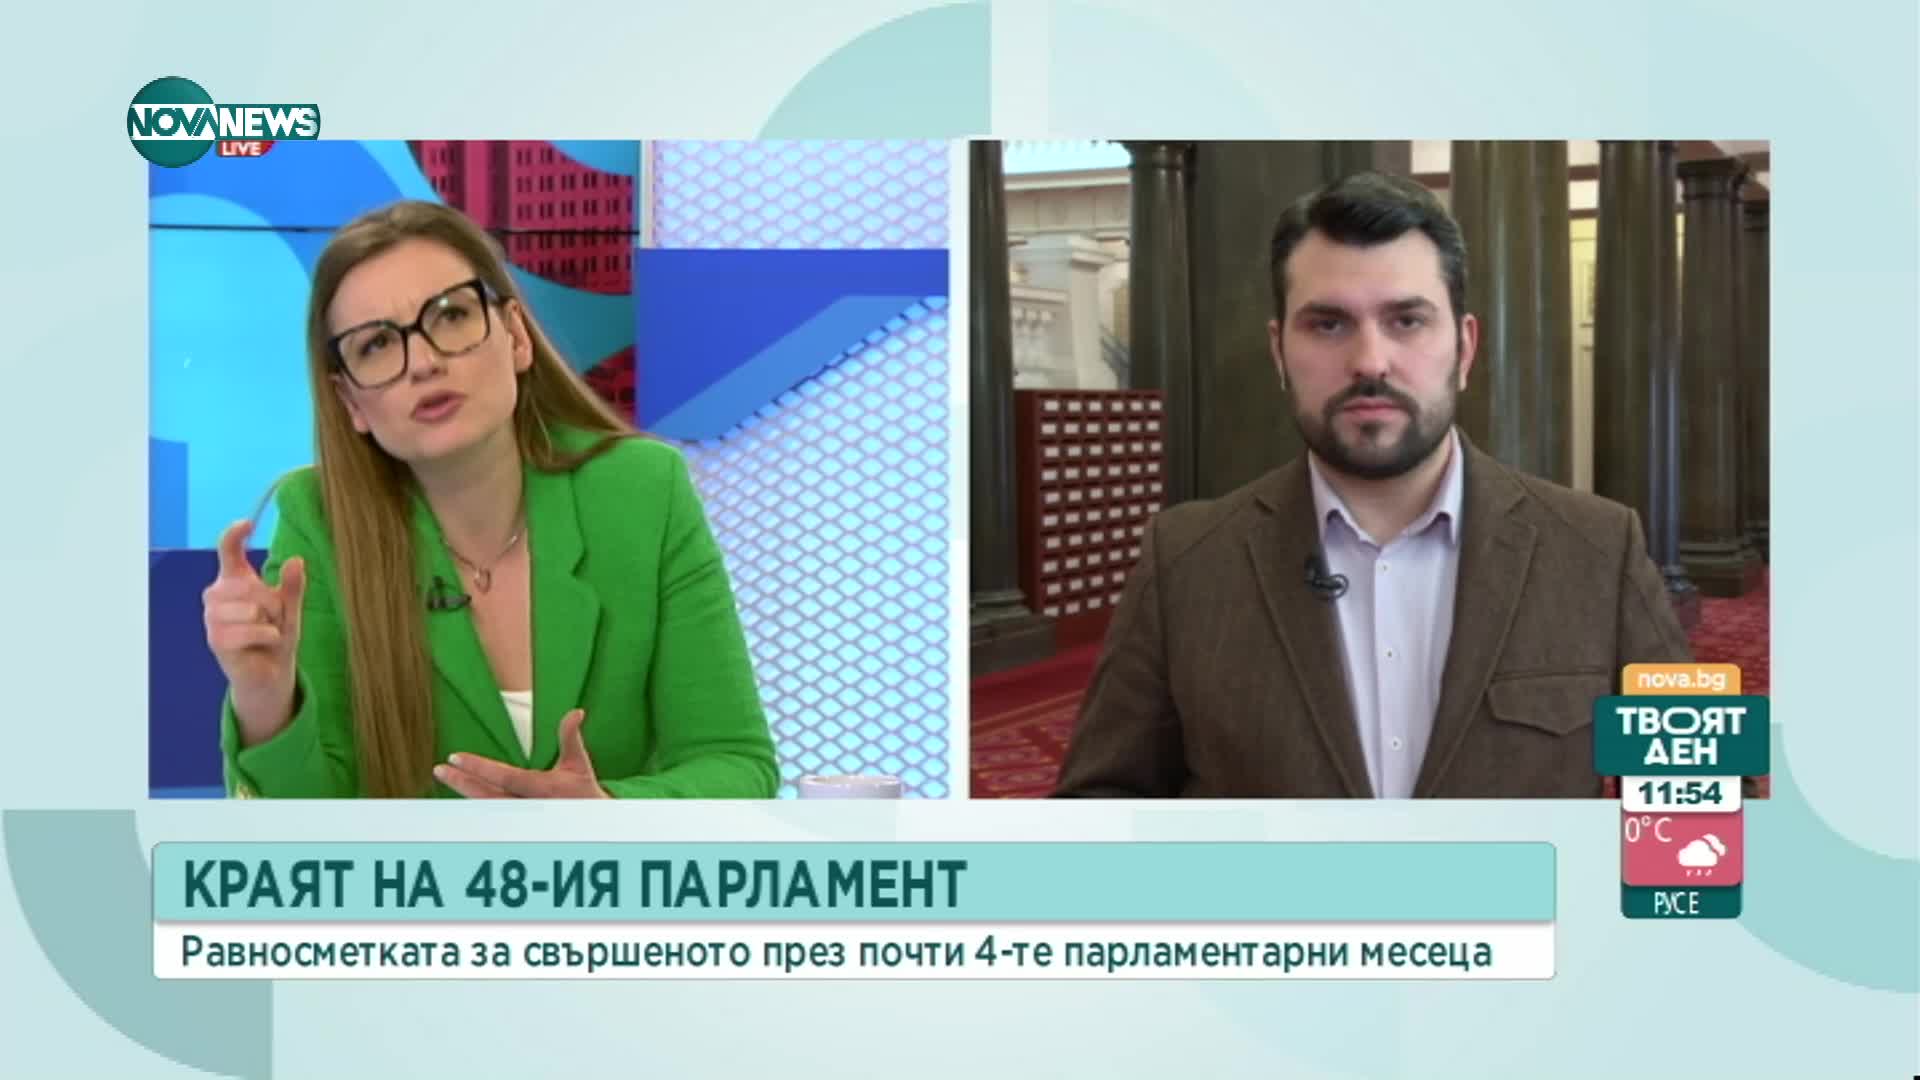 Георгиев: За да се направи съдебна реформа трябва да се промени в определени части Конституцията